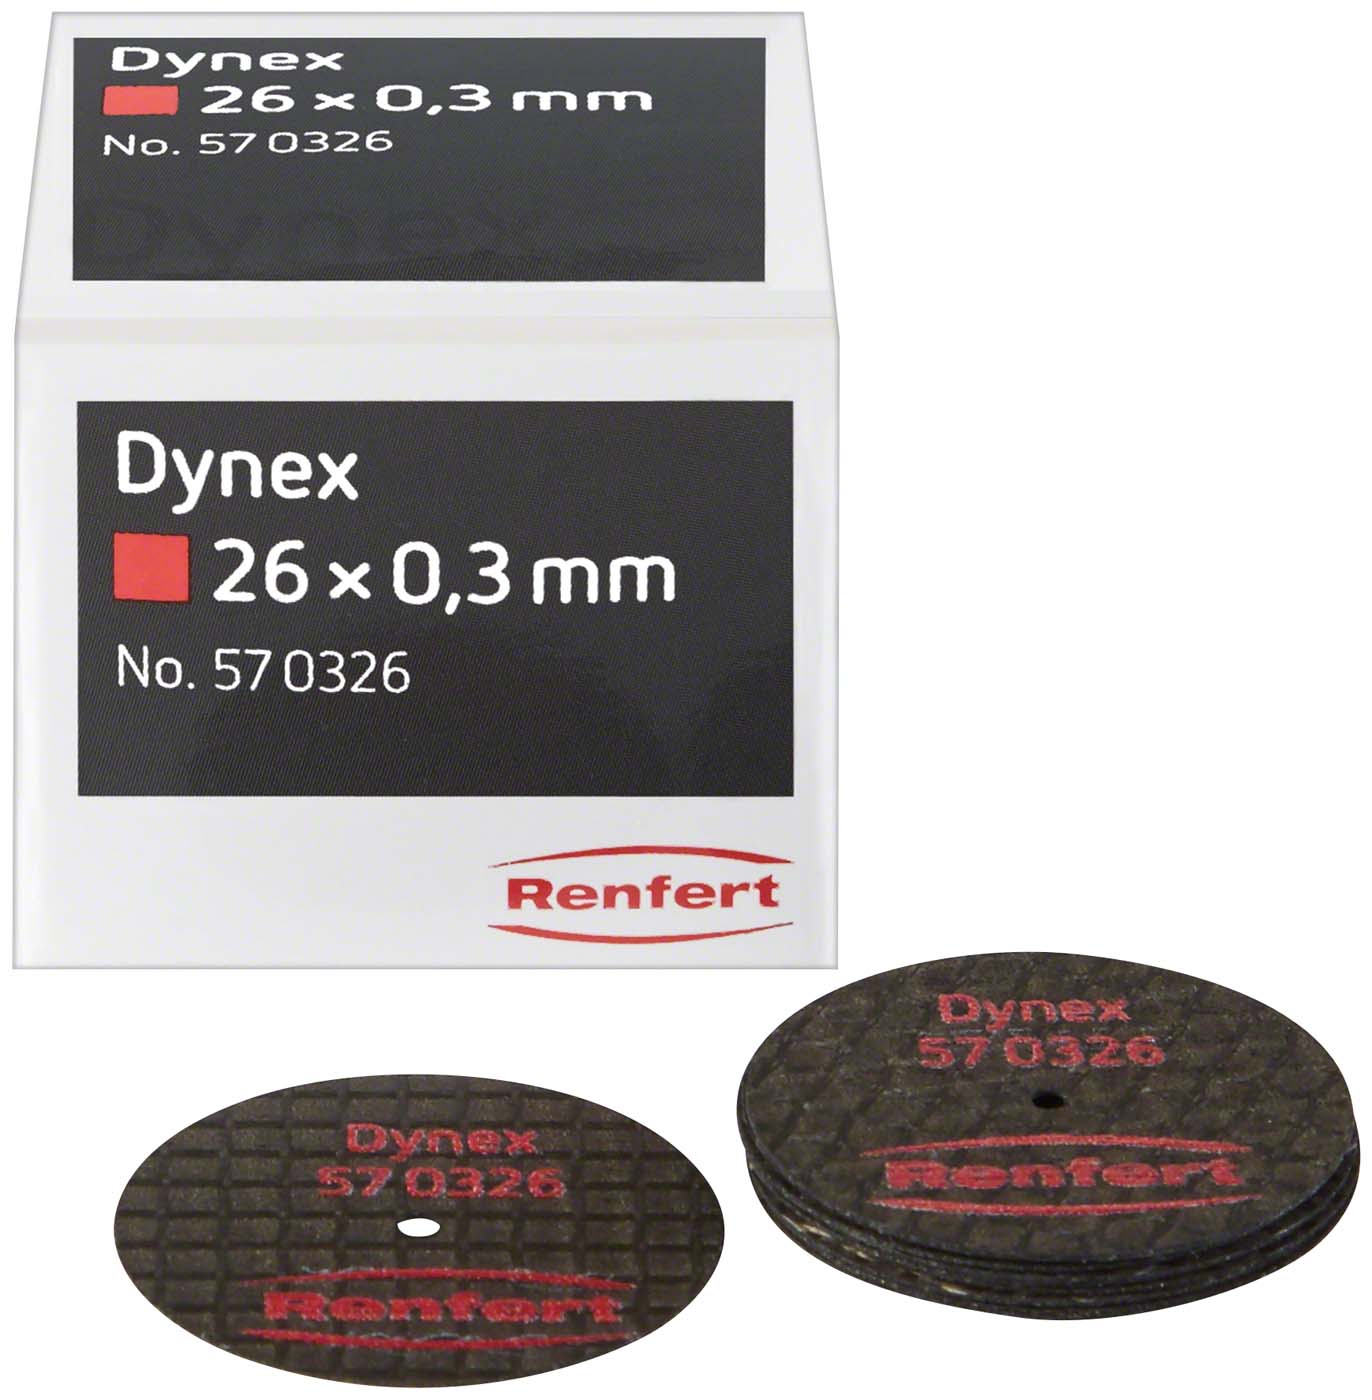 Dynex Renfert